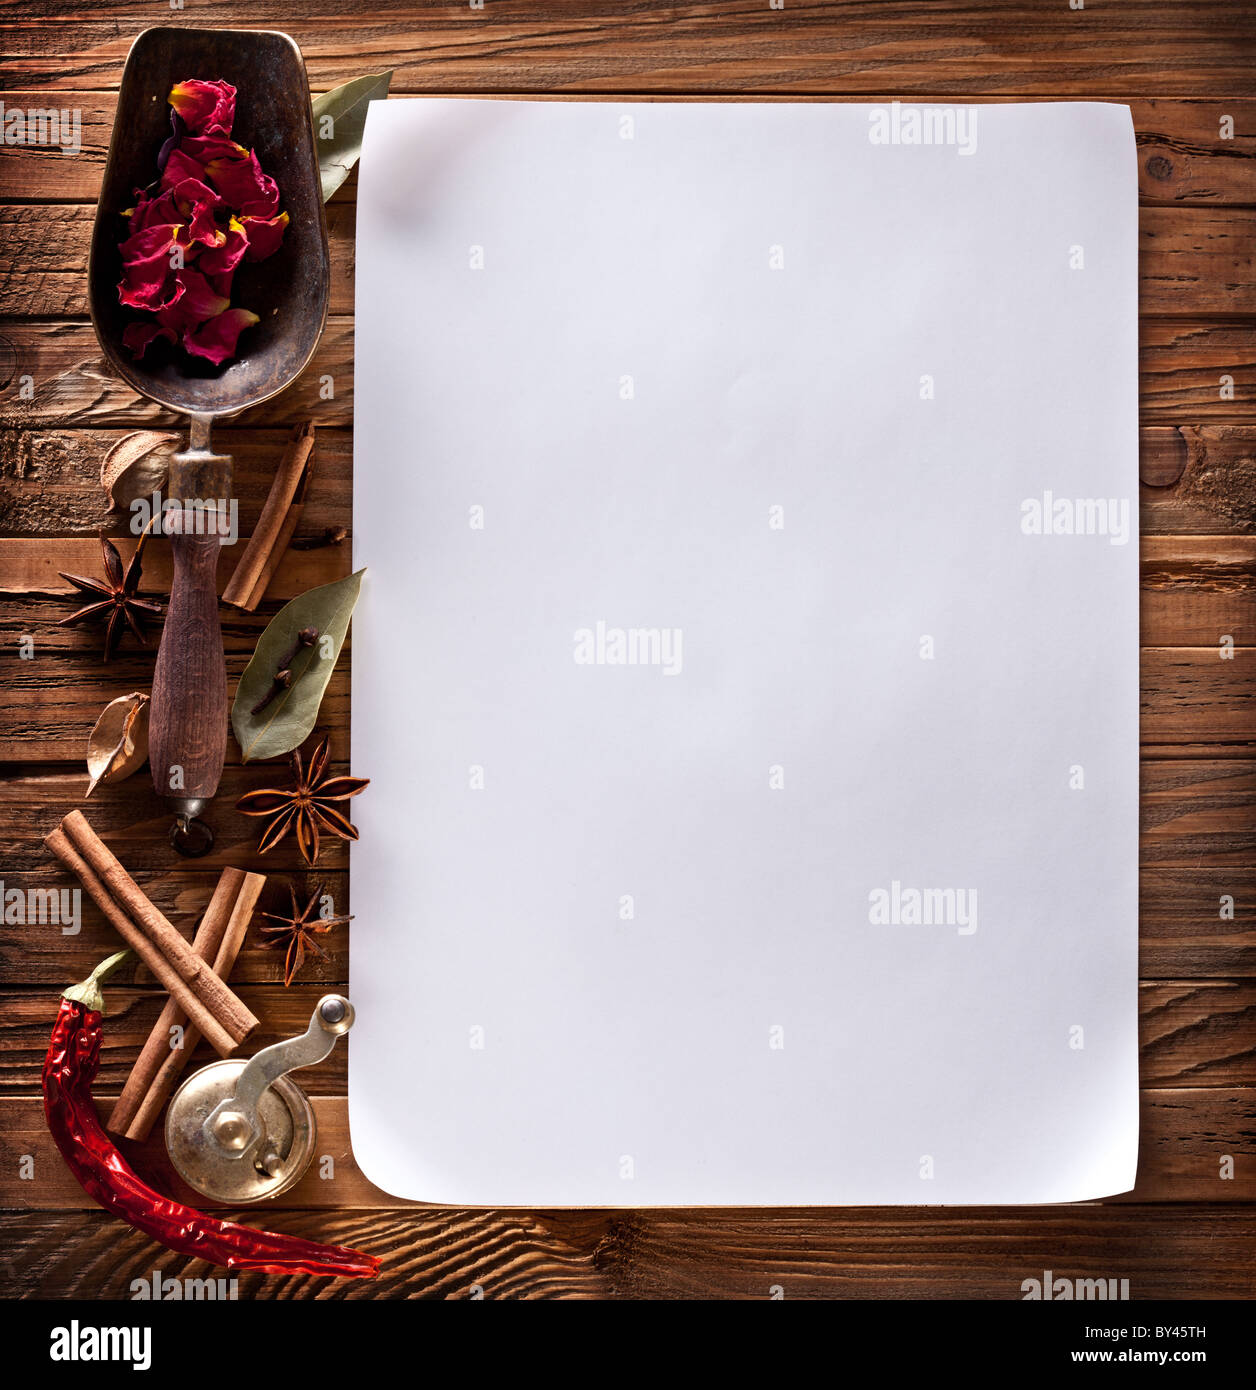 Immagine della carta bianca con spezie su una superficie in legno Foto Stock